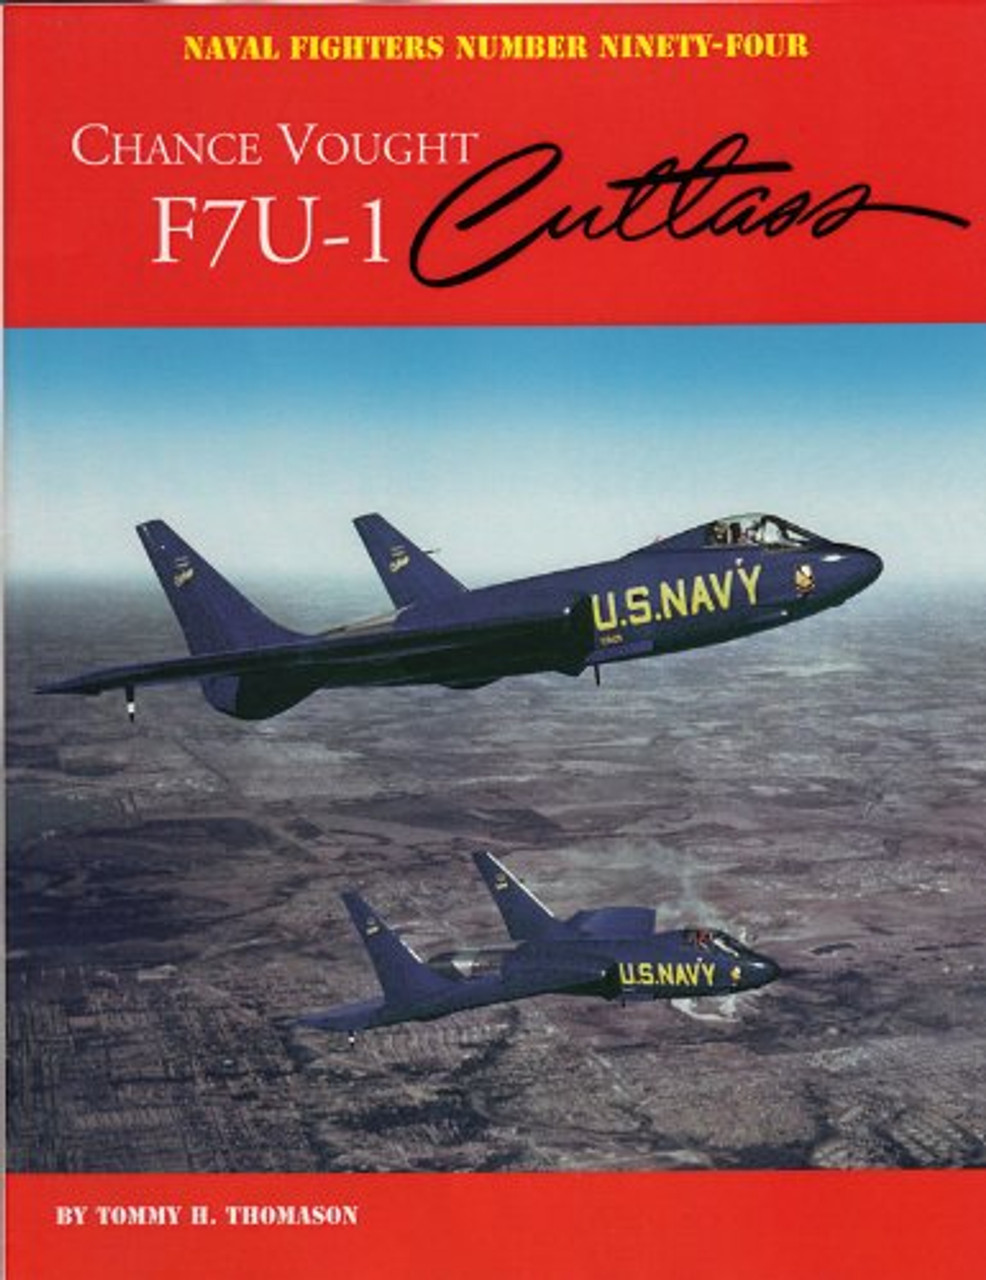 NF094 - Chance Vought F7U-1 Cutlass